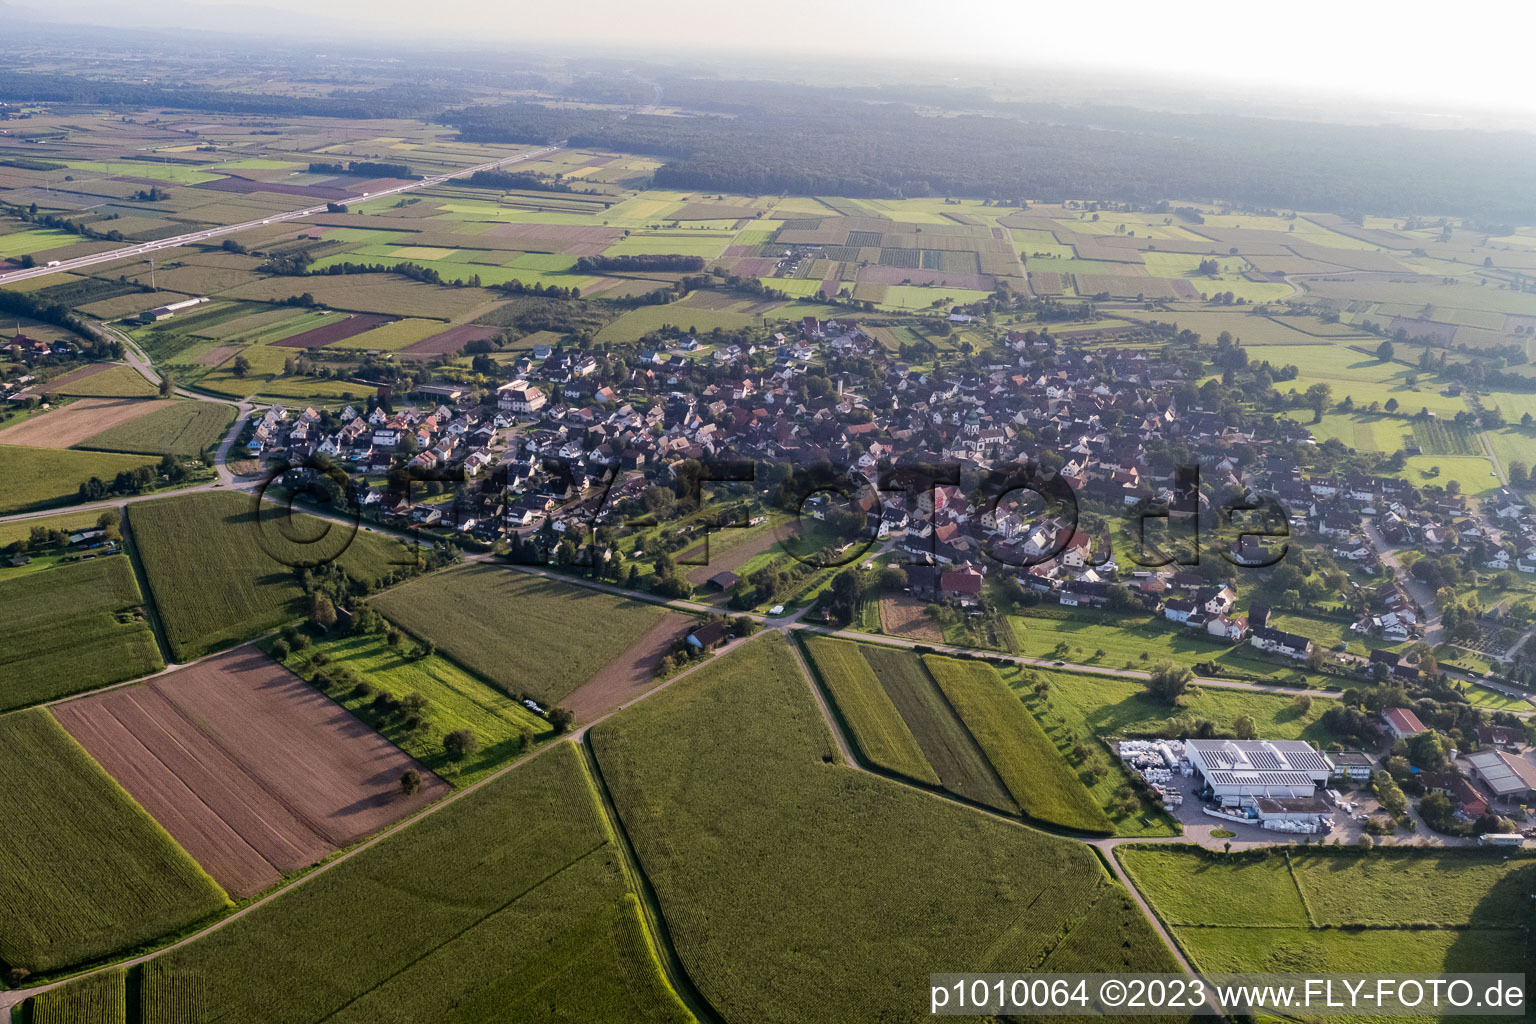 Quartier Wagshurst in Achern dans le département Bade-Wurtemberg, Allemagne hors des airs